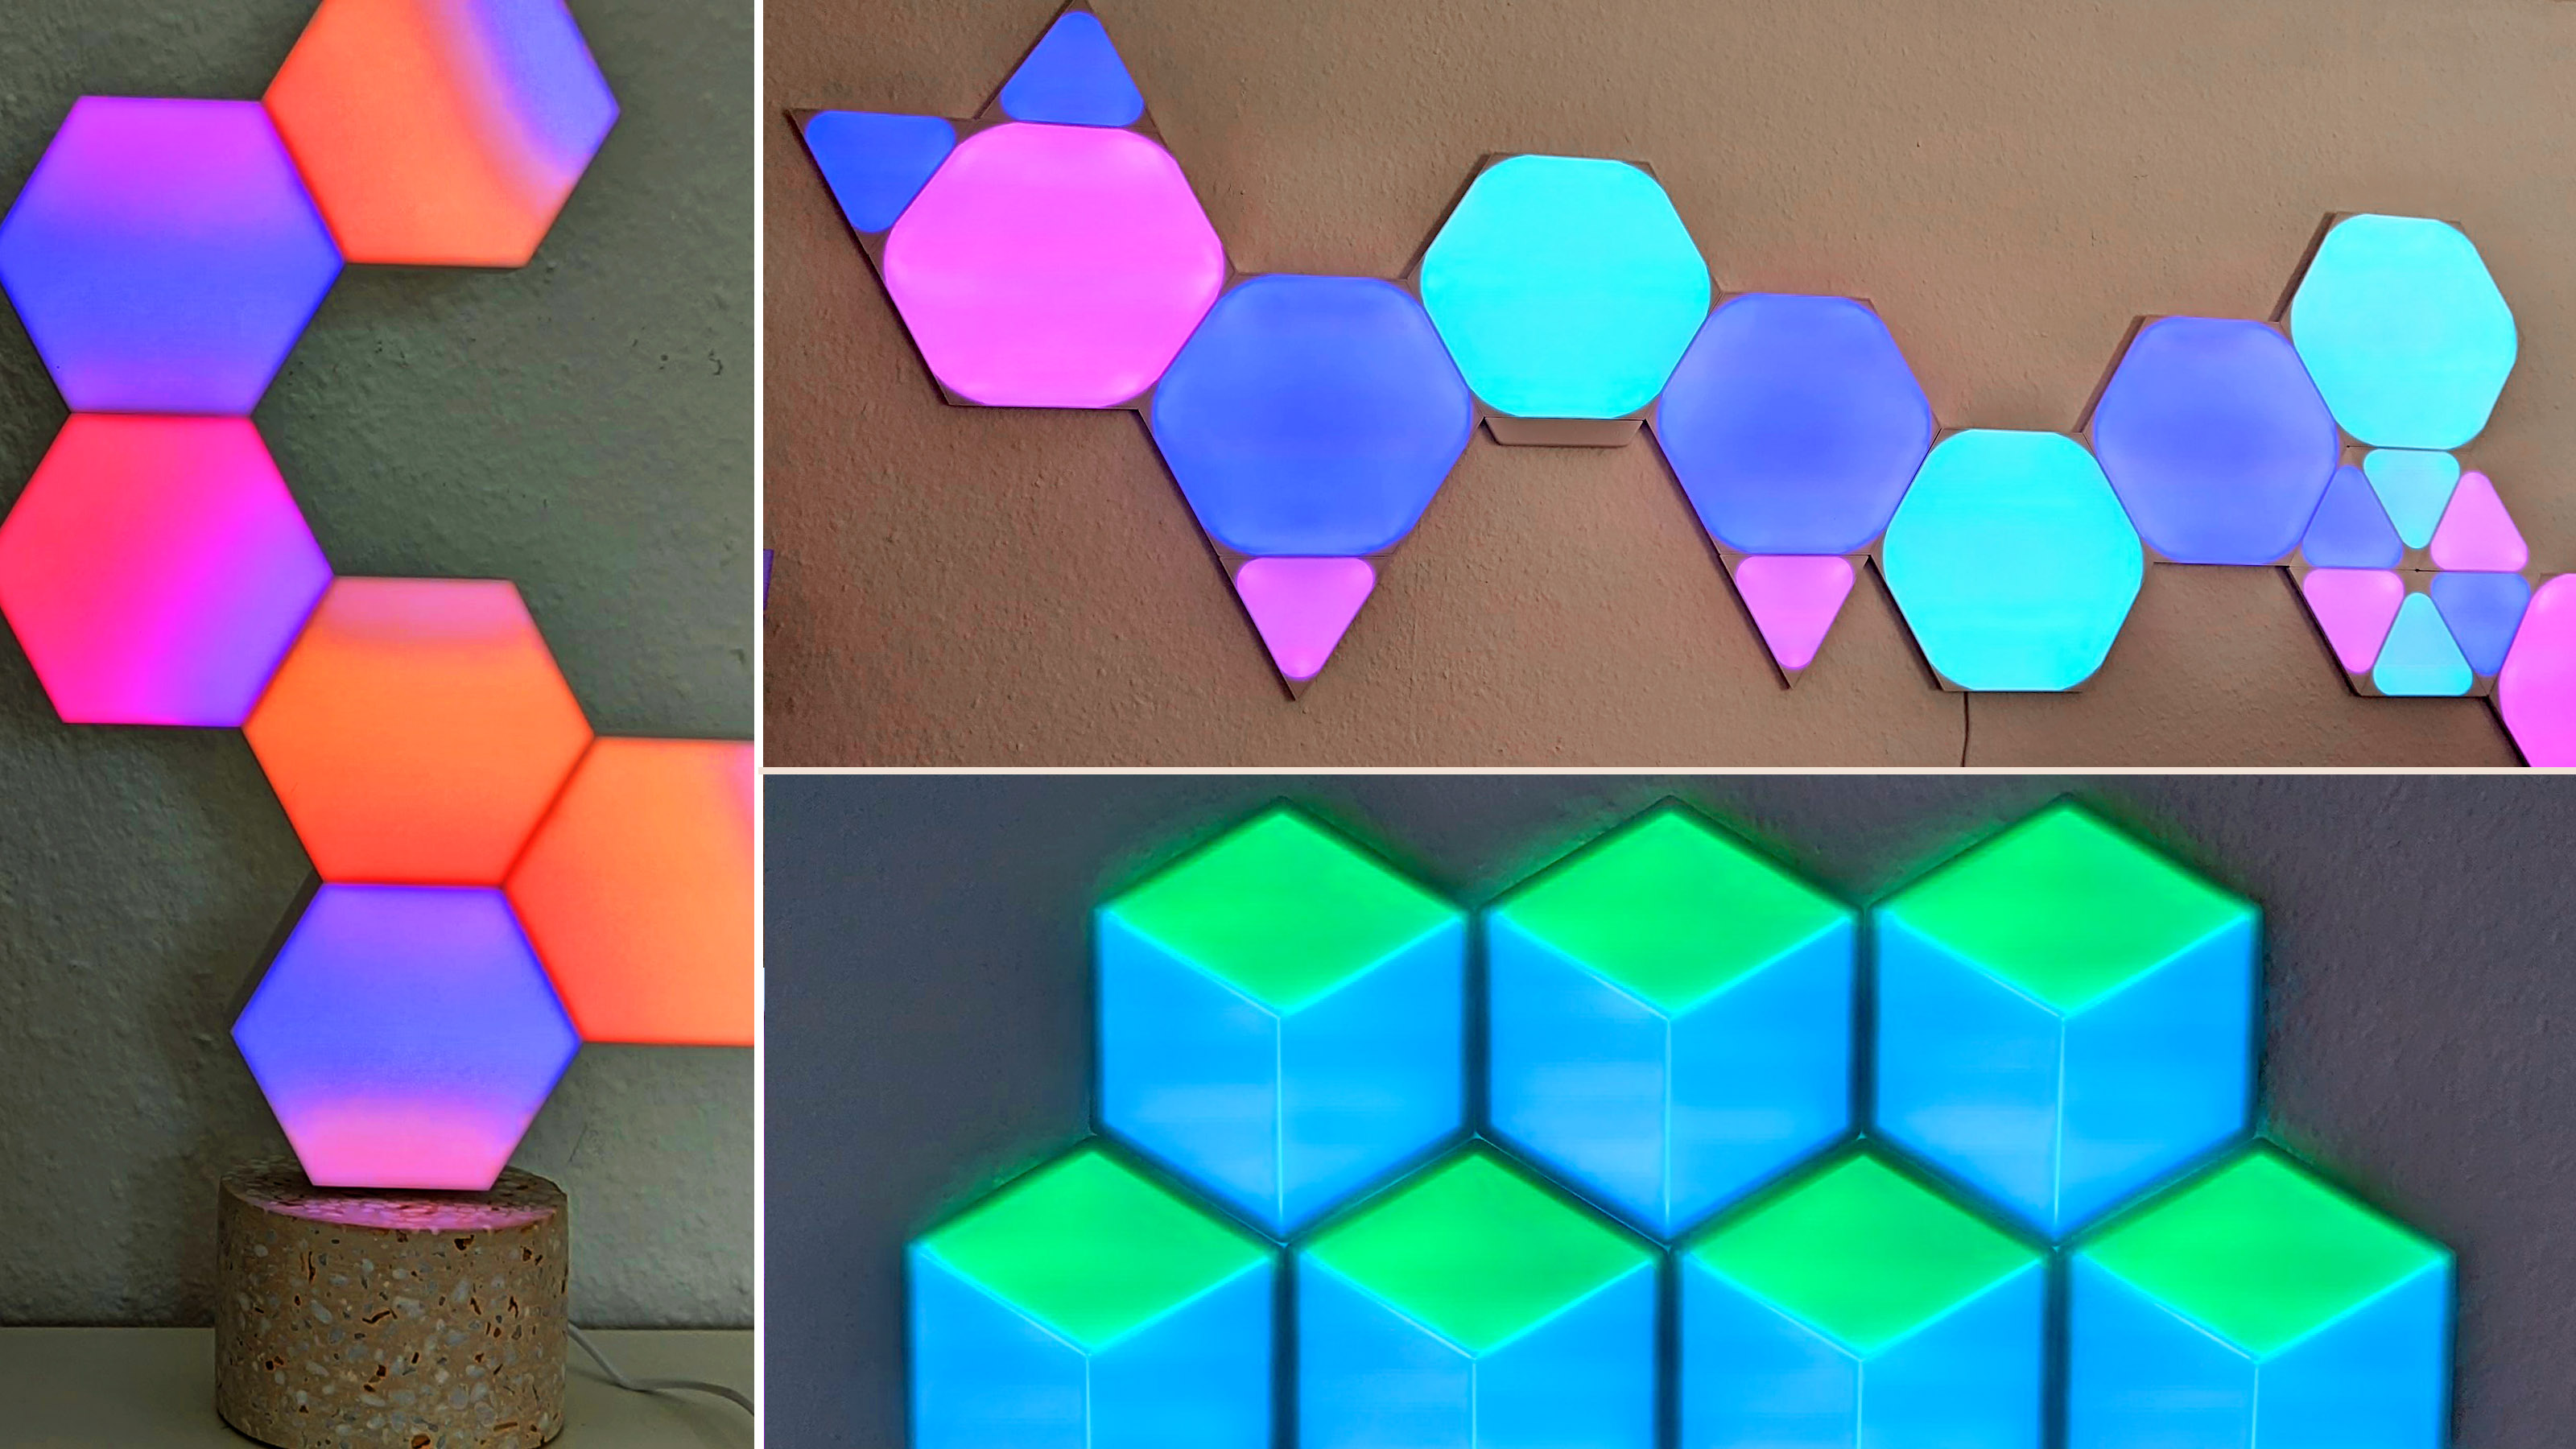 Smarte LED-Panels: Das sind die besten Nanoleaf Alternativen | TechStage